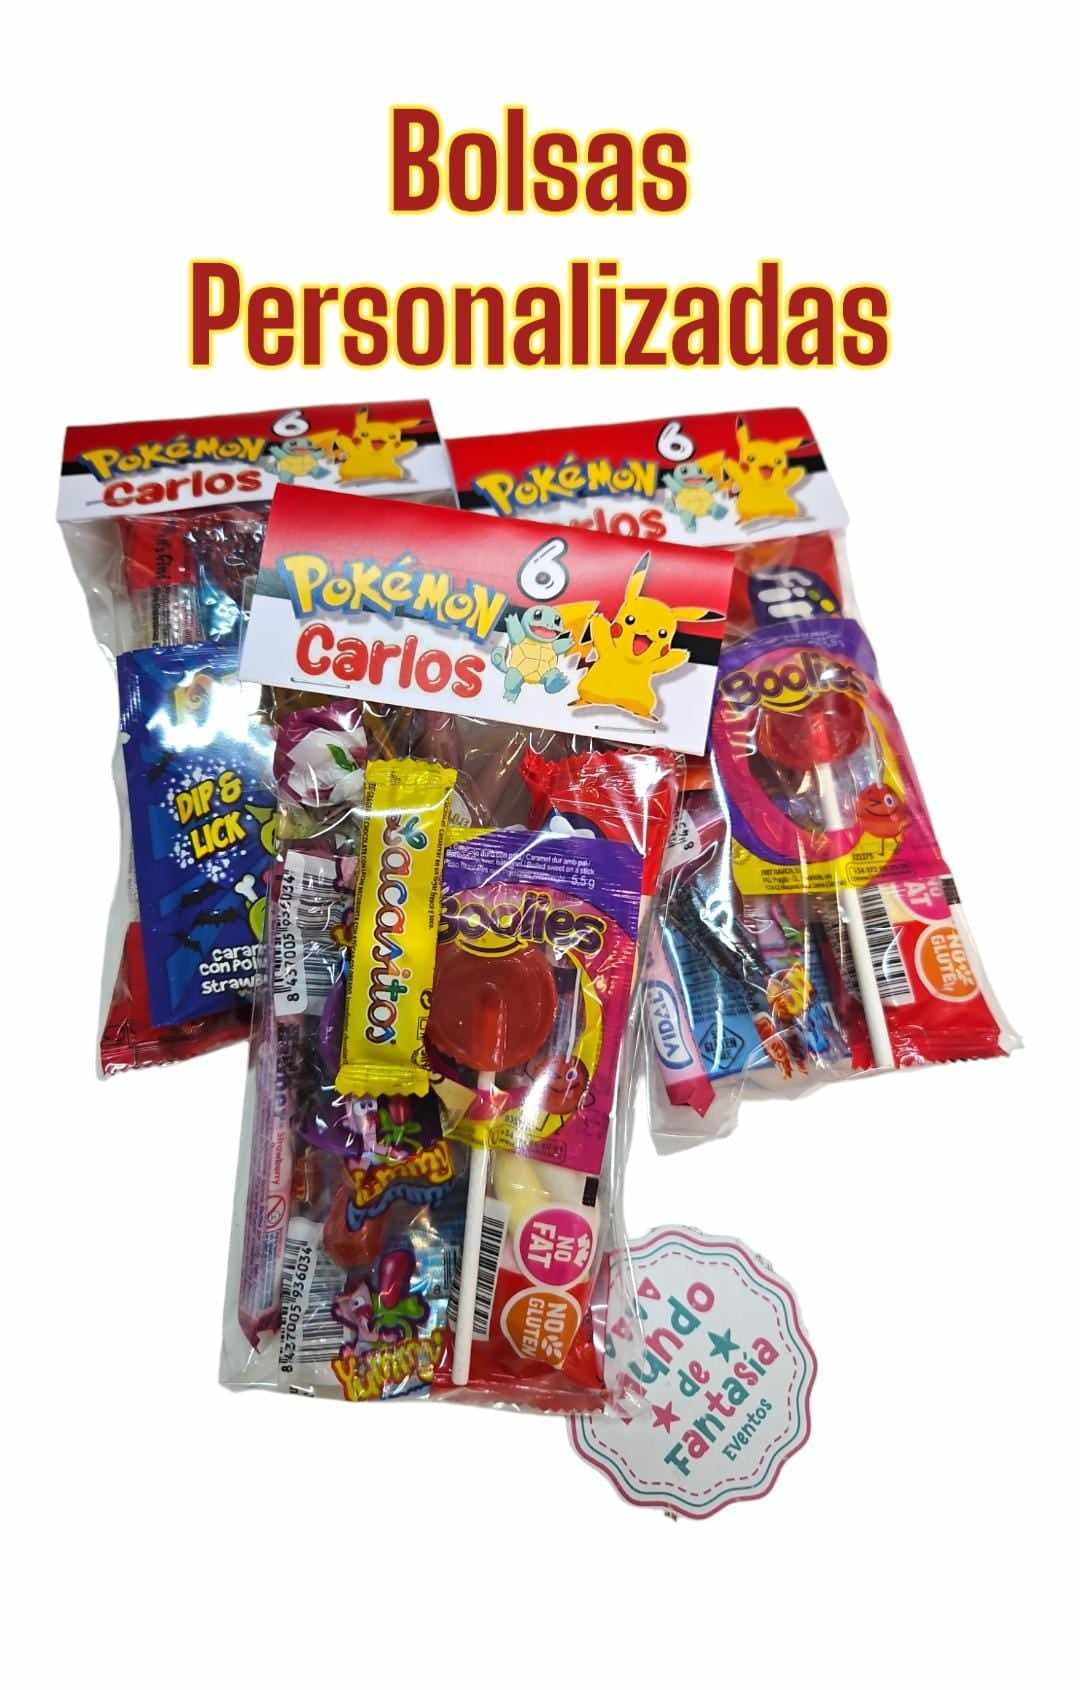 Bolsas de #chuches #personalizadas para #cumpleaños www.haveanicecake.es